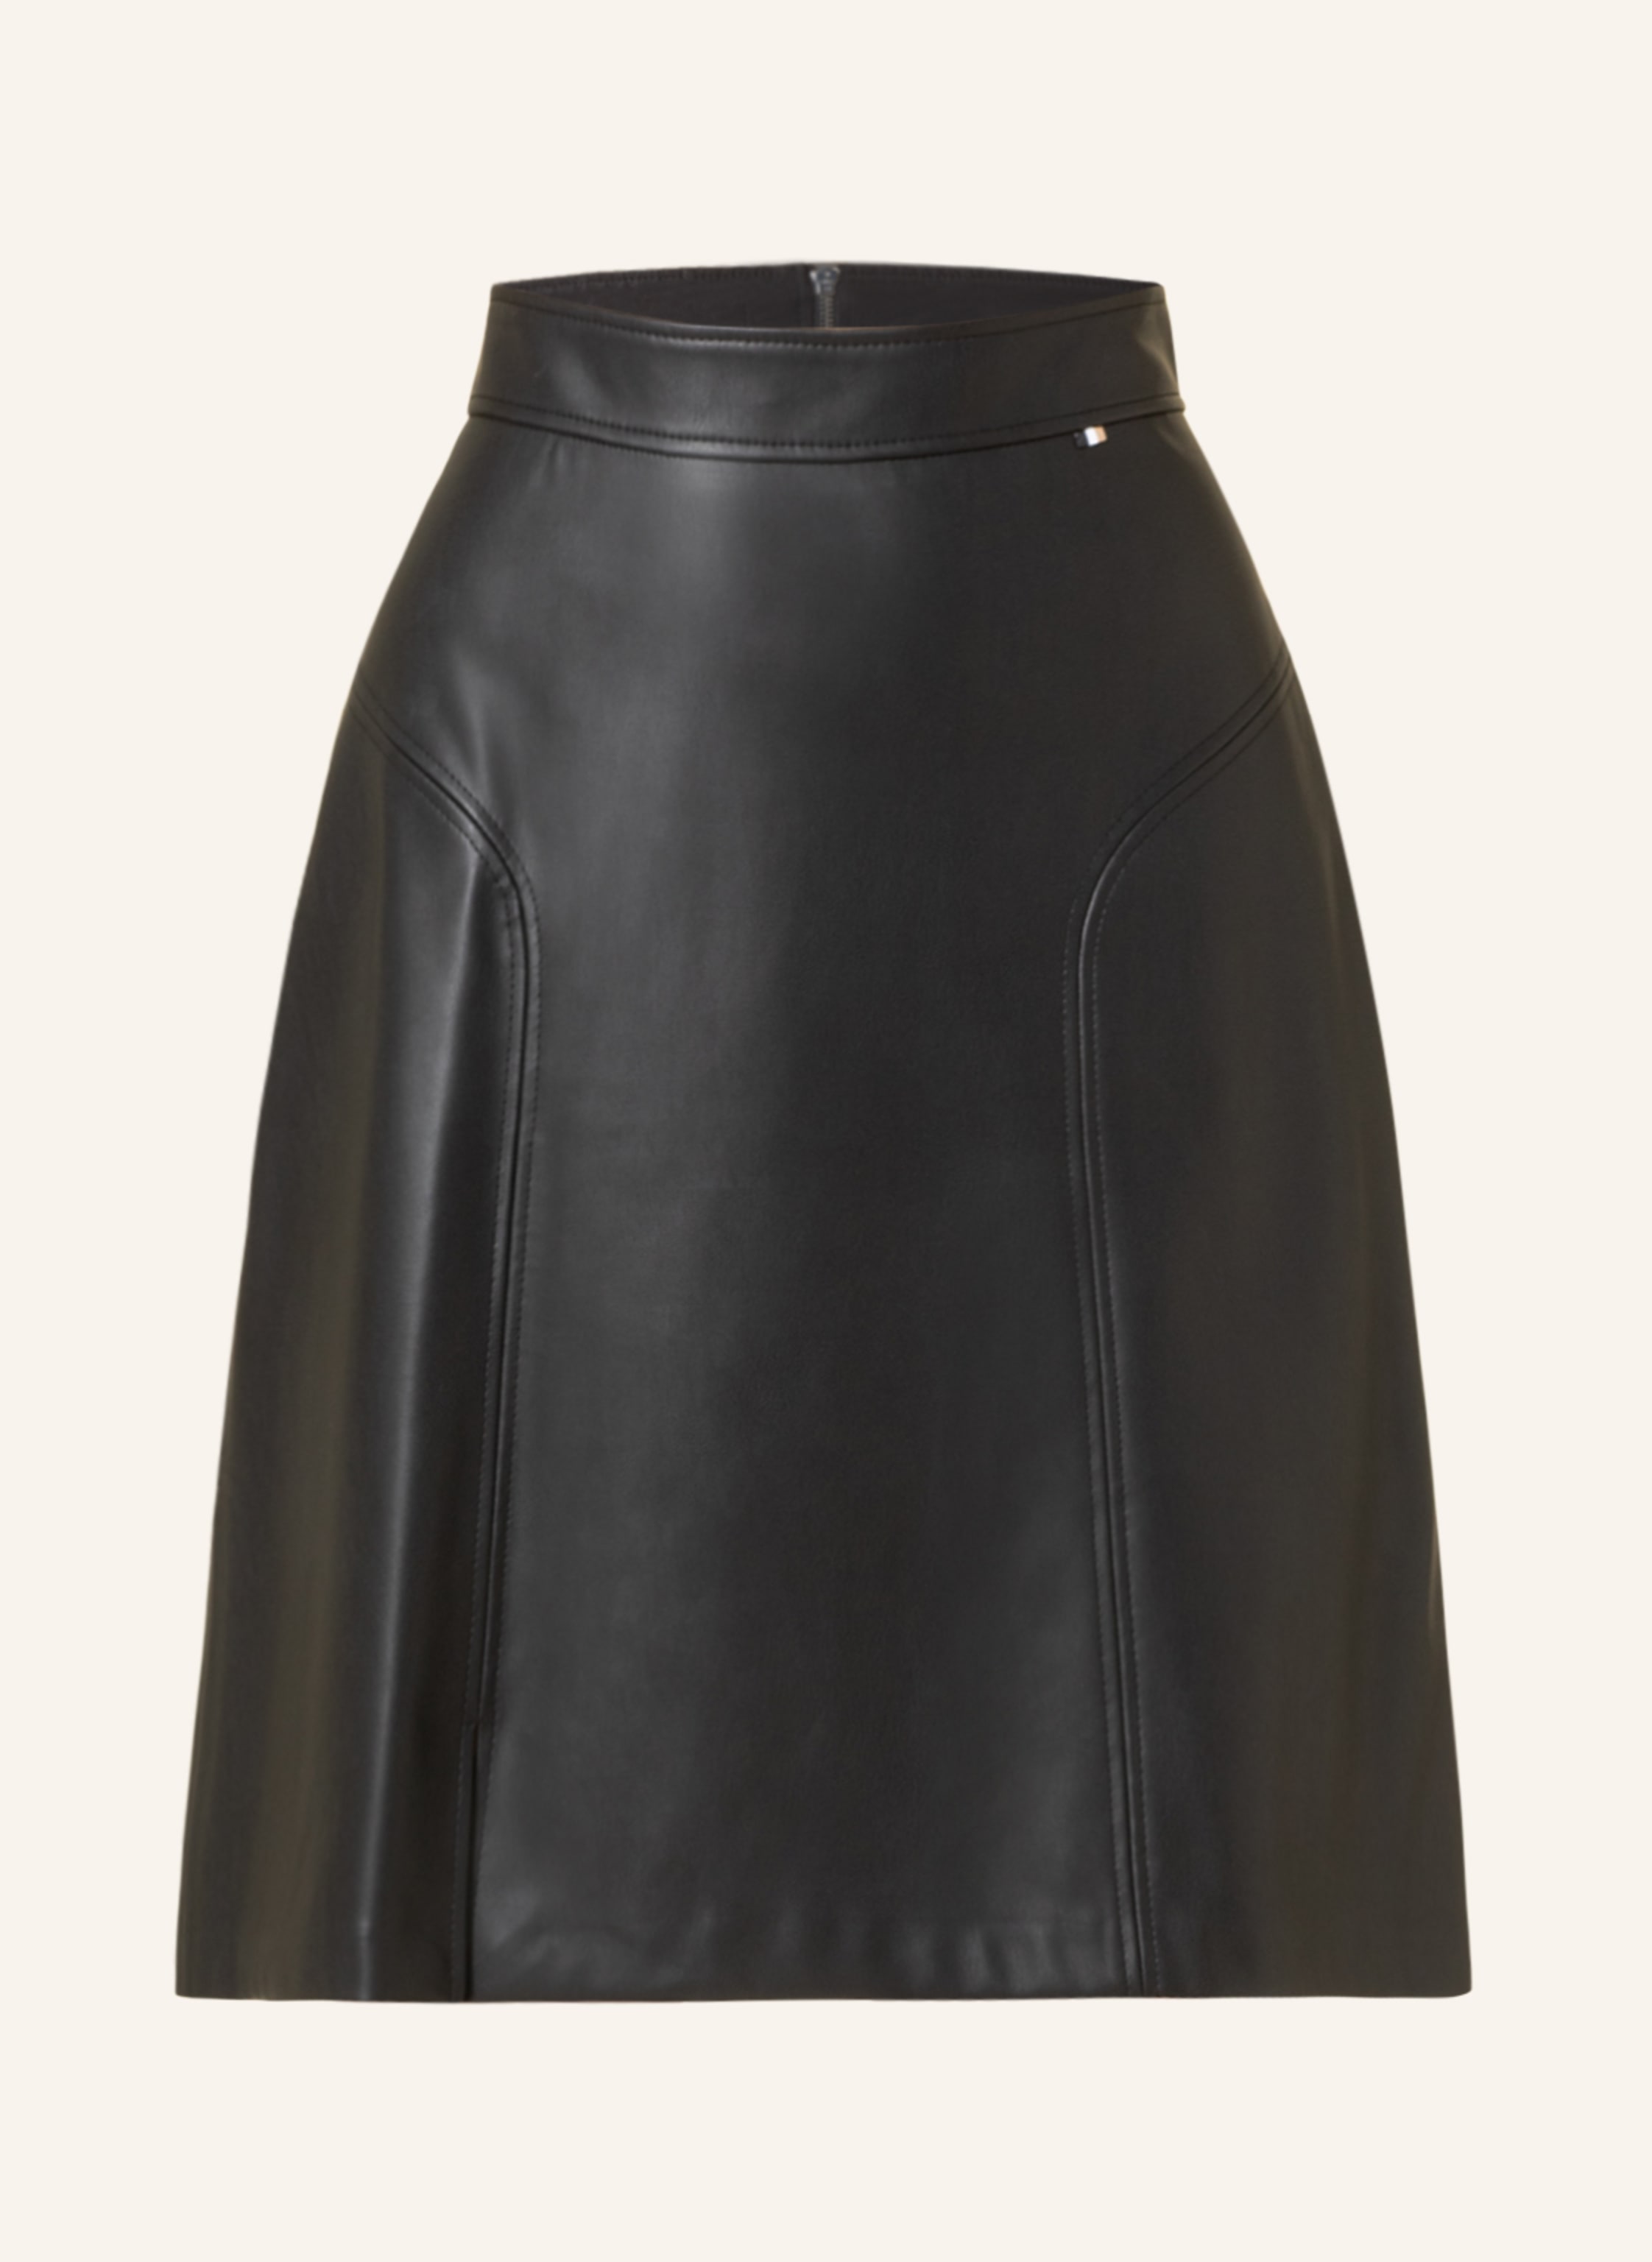 BOSS Skirt VALEGA in a leather look in black | Breuninger